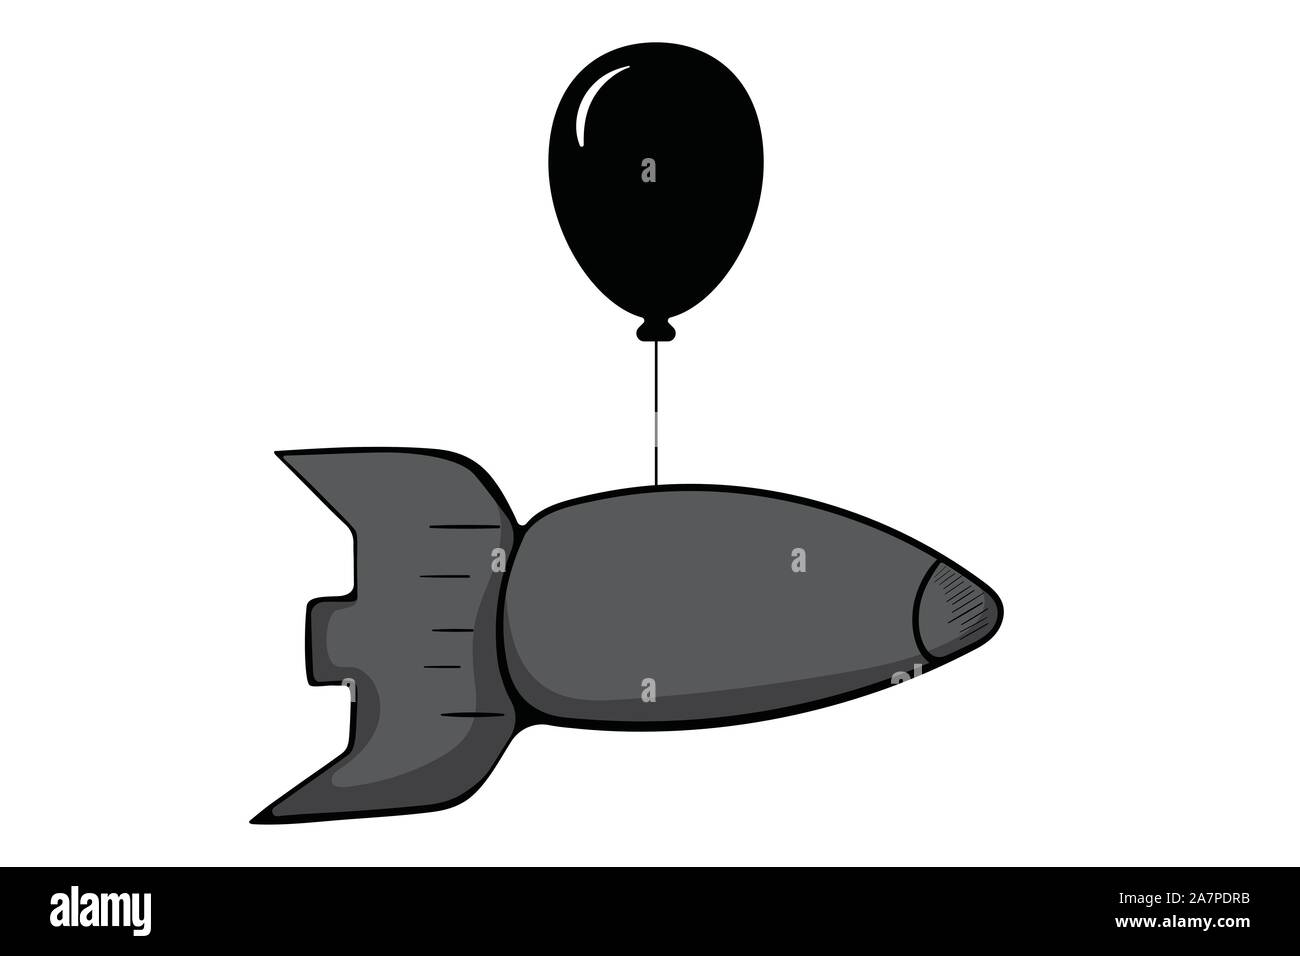 Grey warhead on black balloon Stock Vector